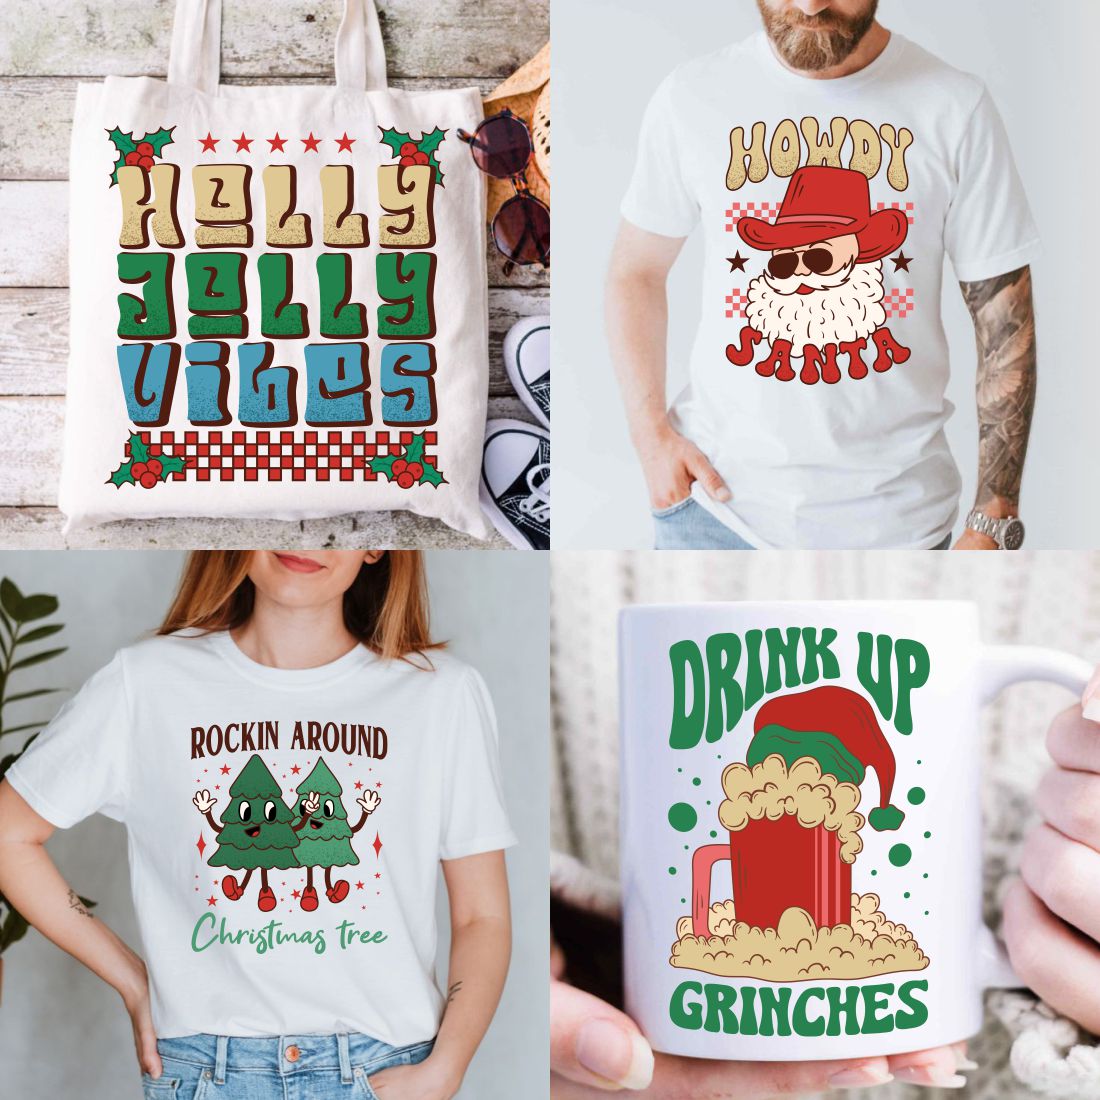 Retro Christmas Vintage T-shirt Designs Sublimation Bundle preview image.